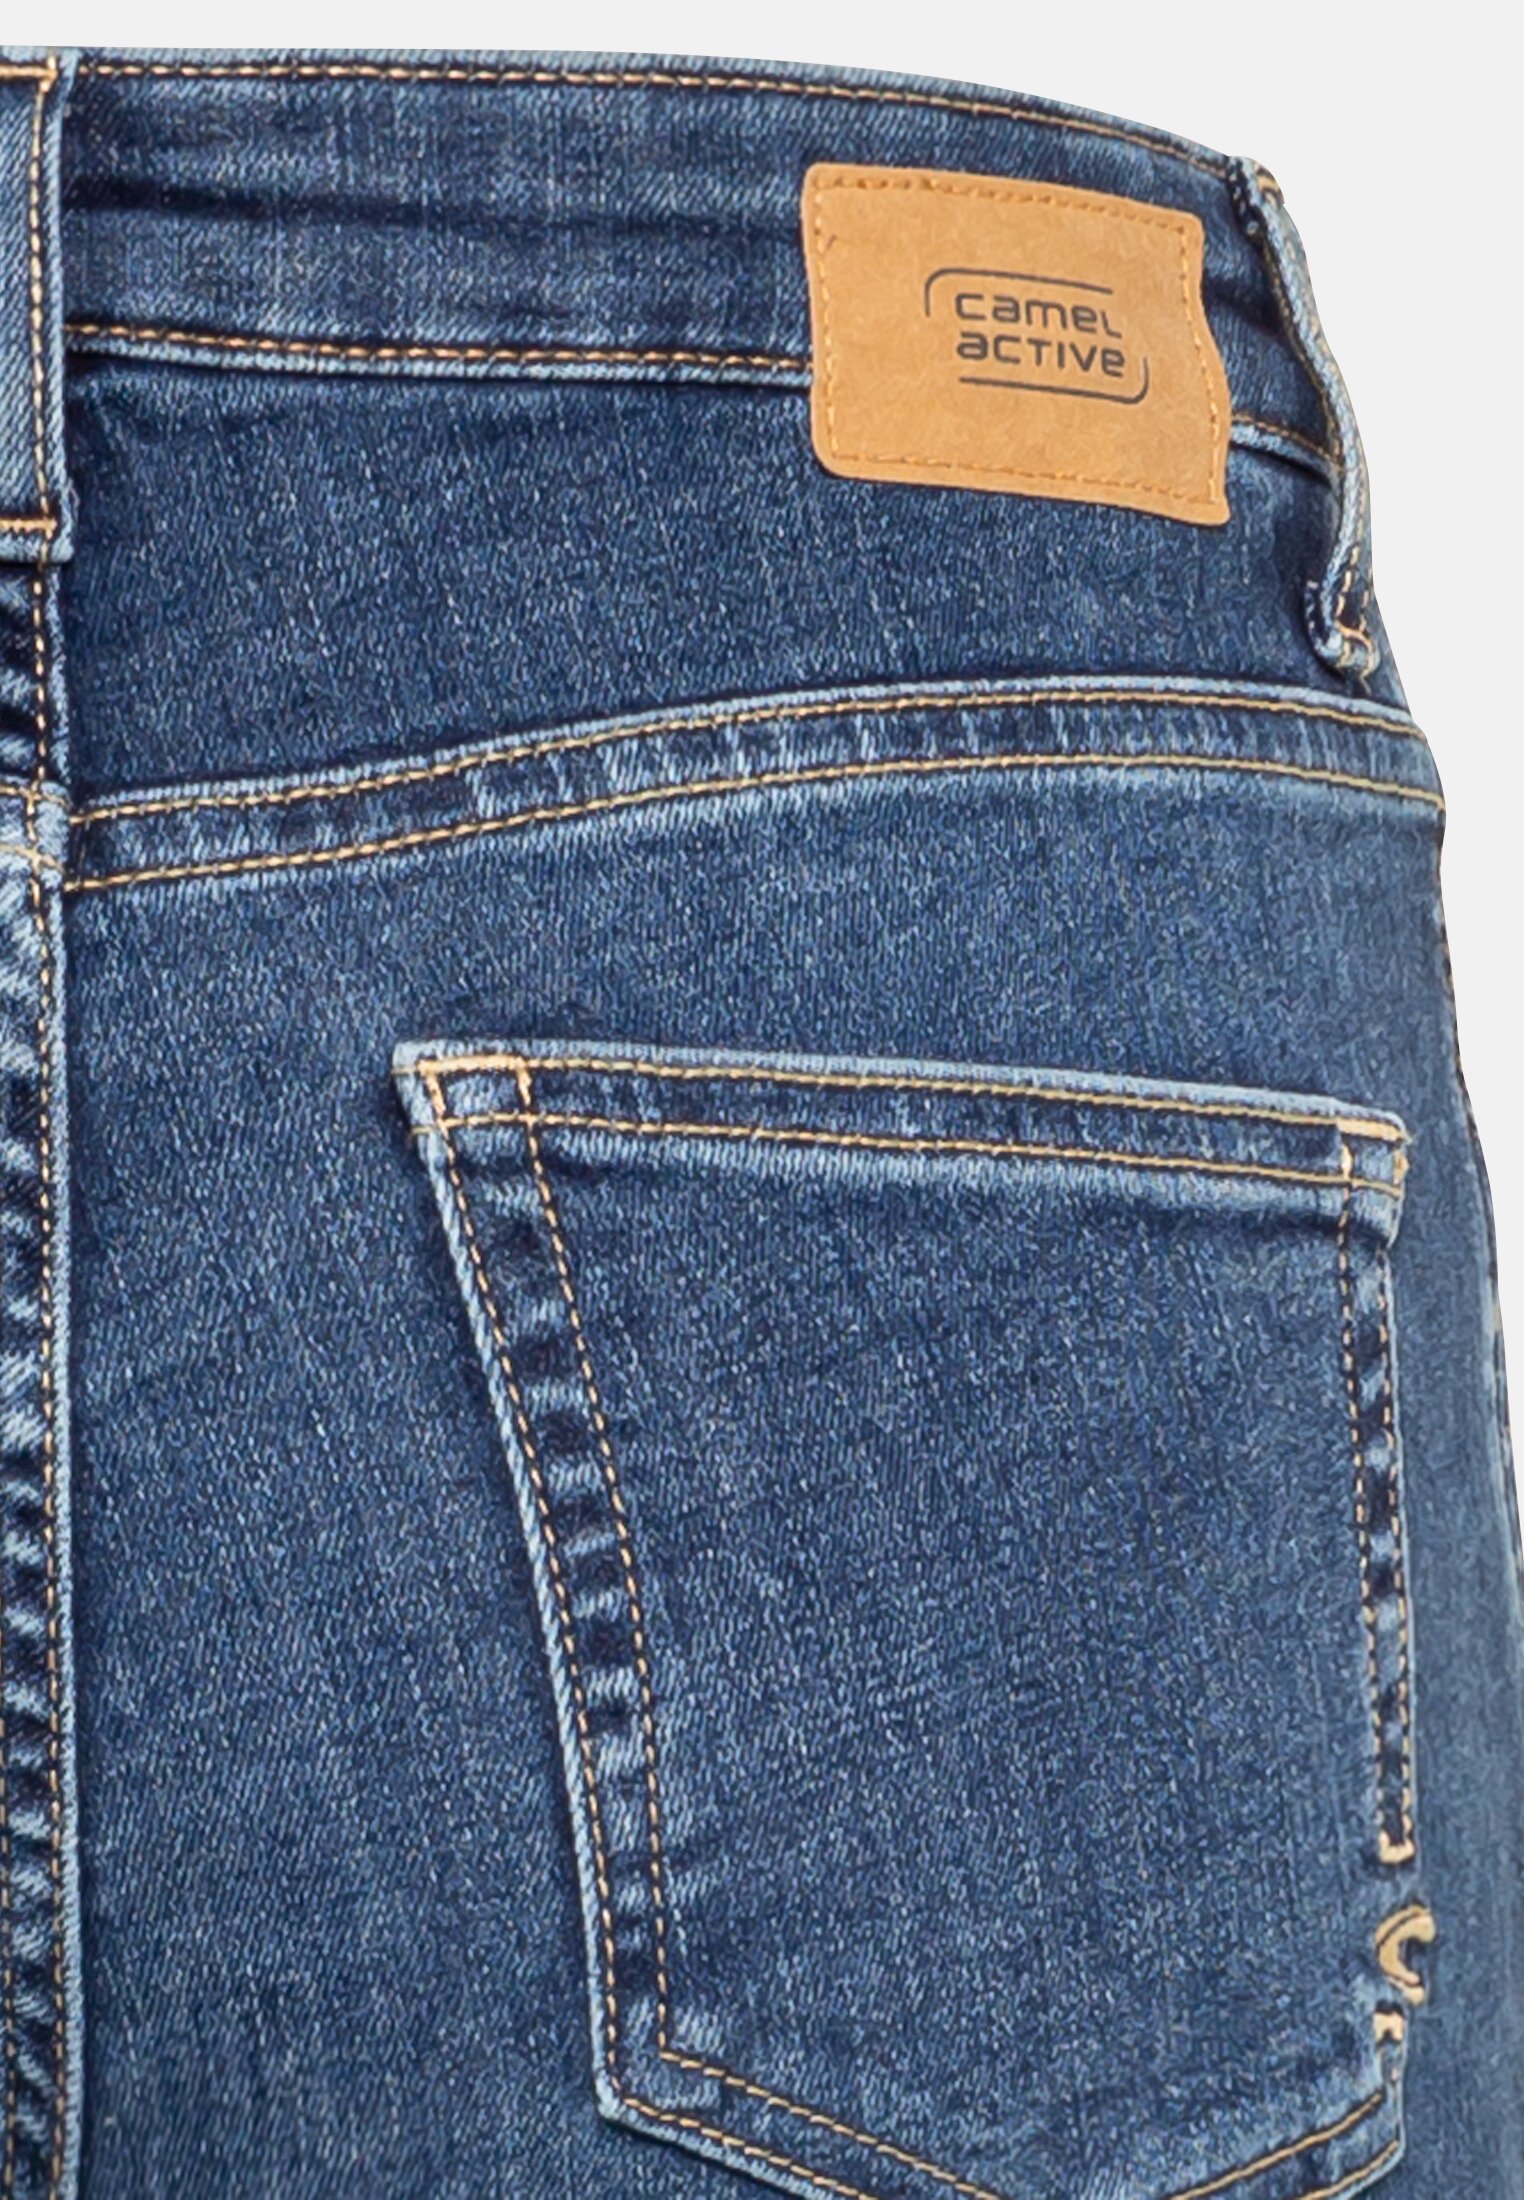 5-pocket jeans for | Damen 26/30 | active Blue in camel